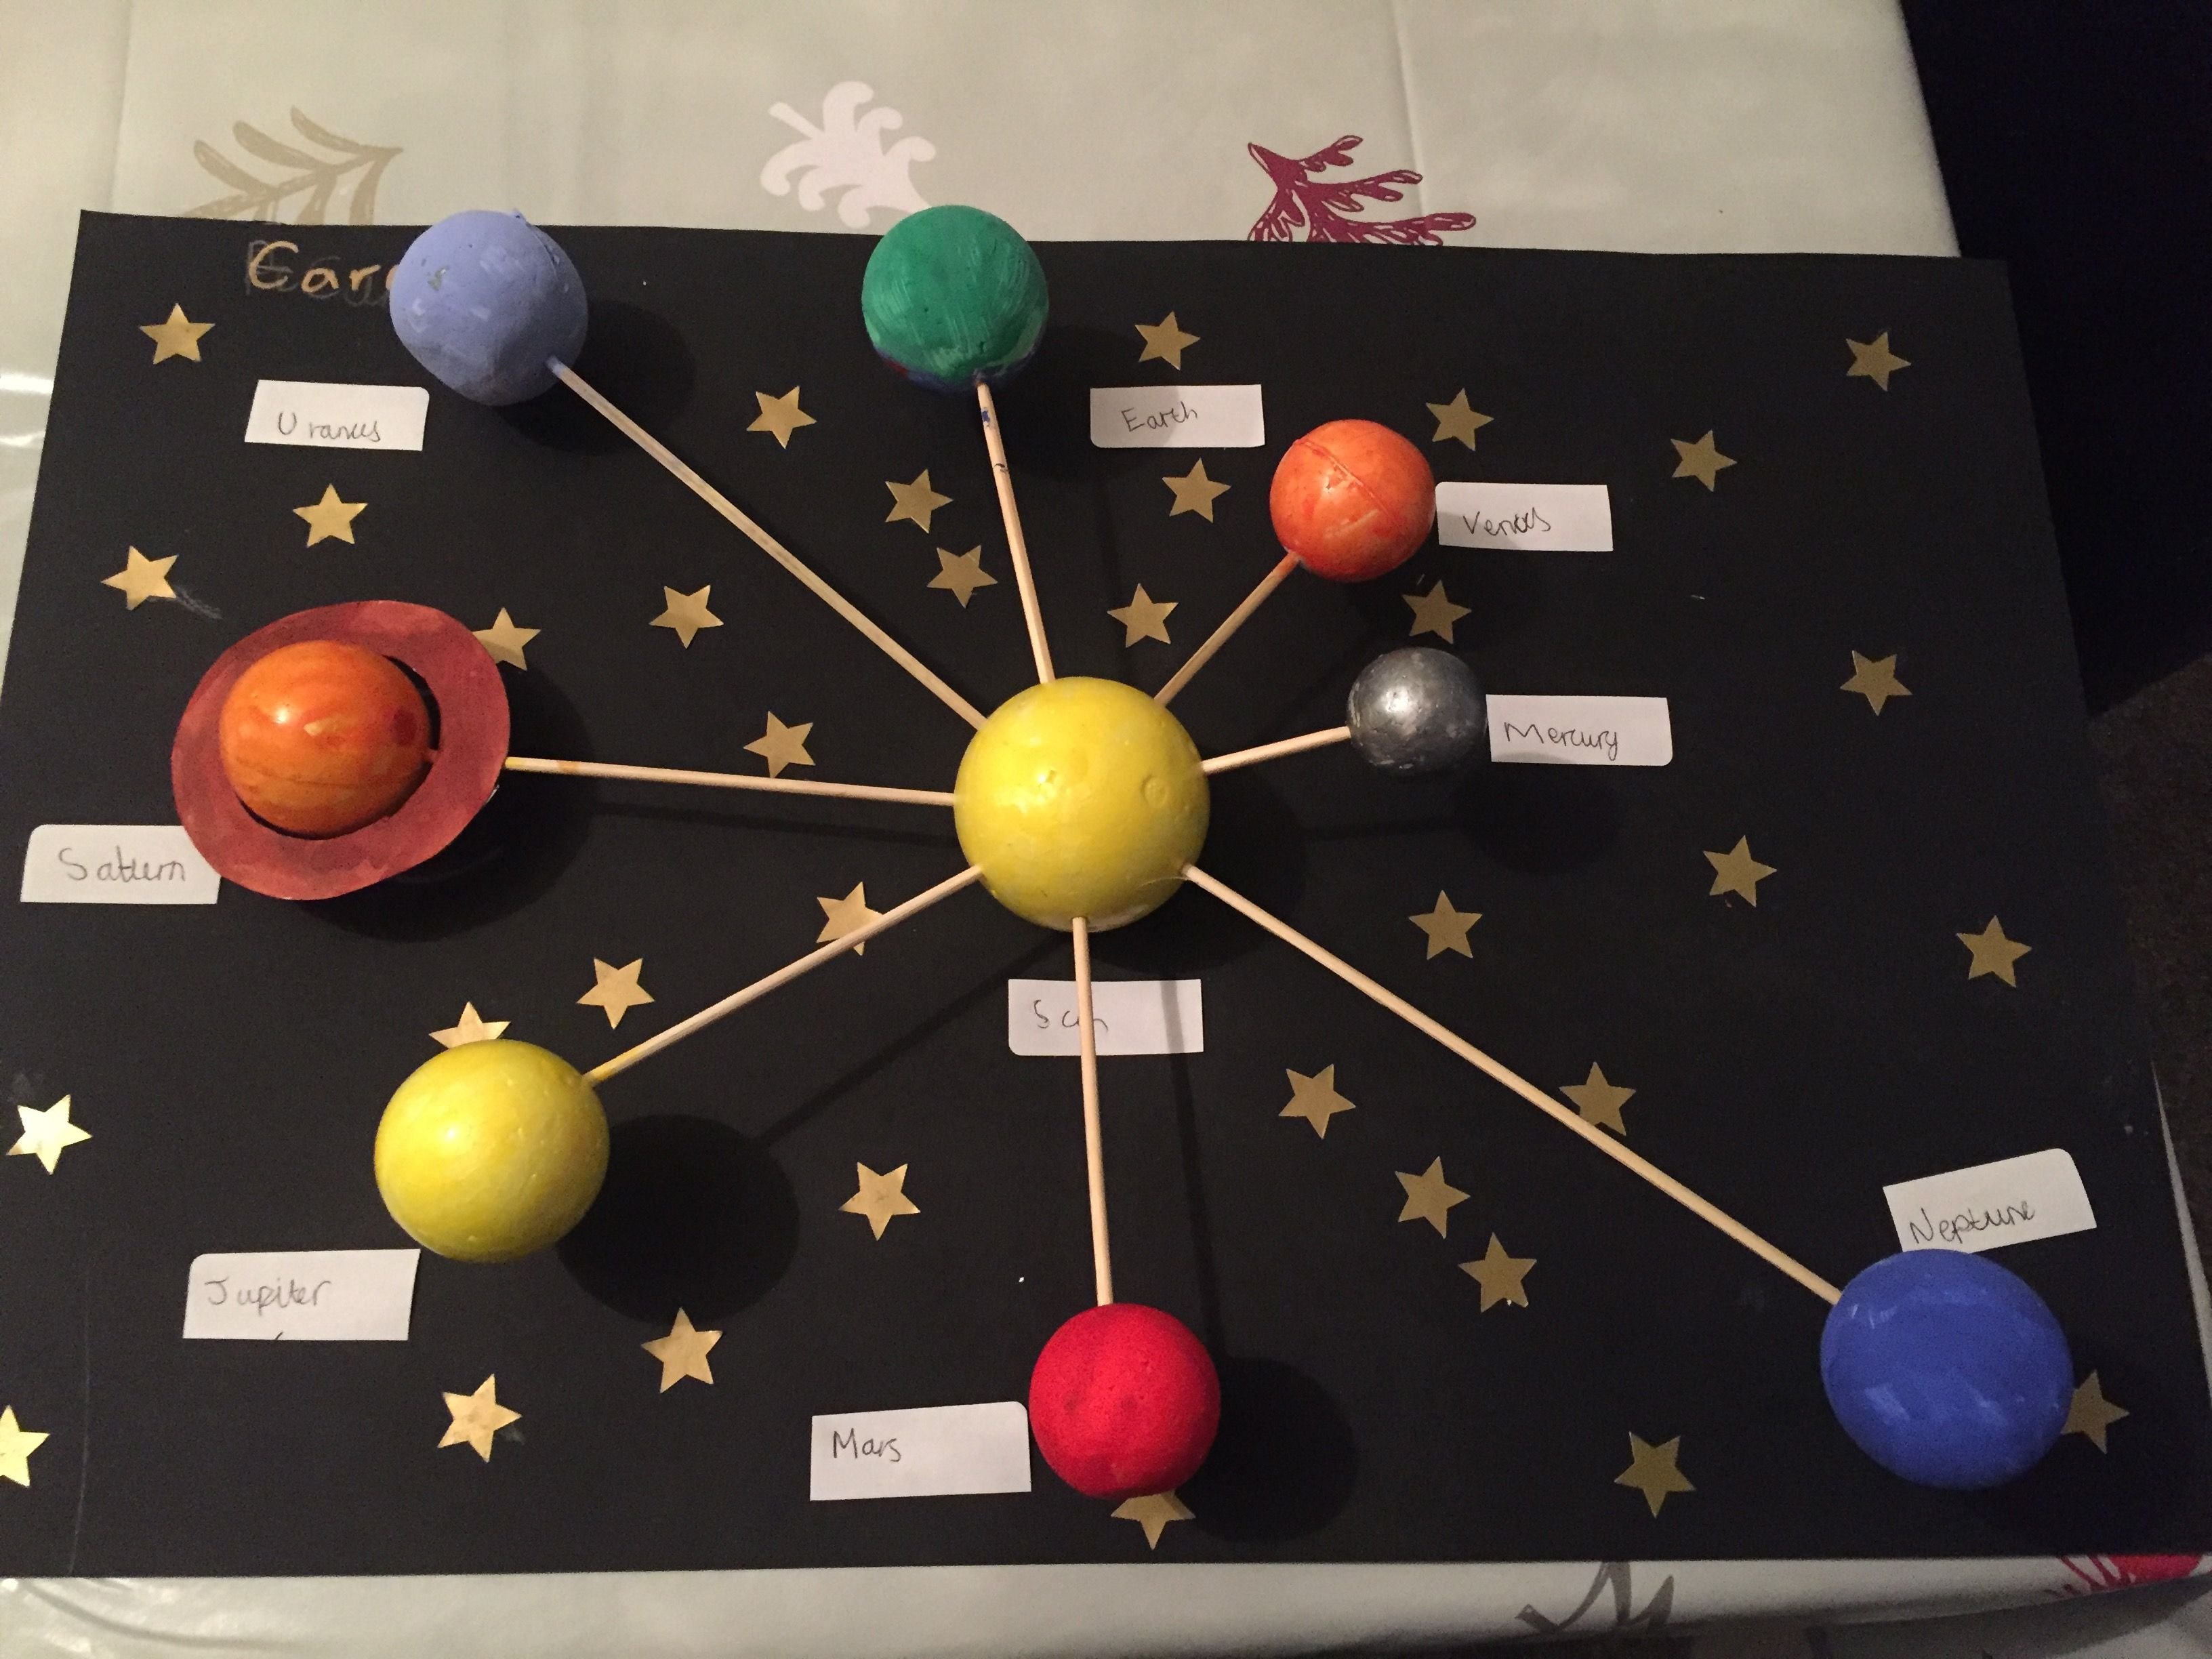 Модель Солнечной системы своими руками 4M (00-03257/ML)